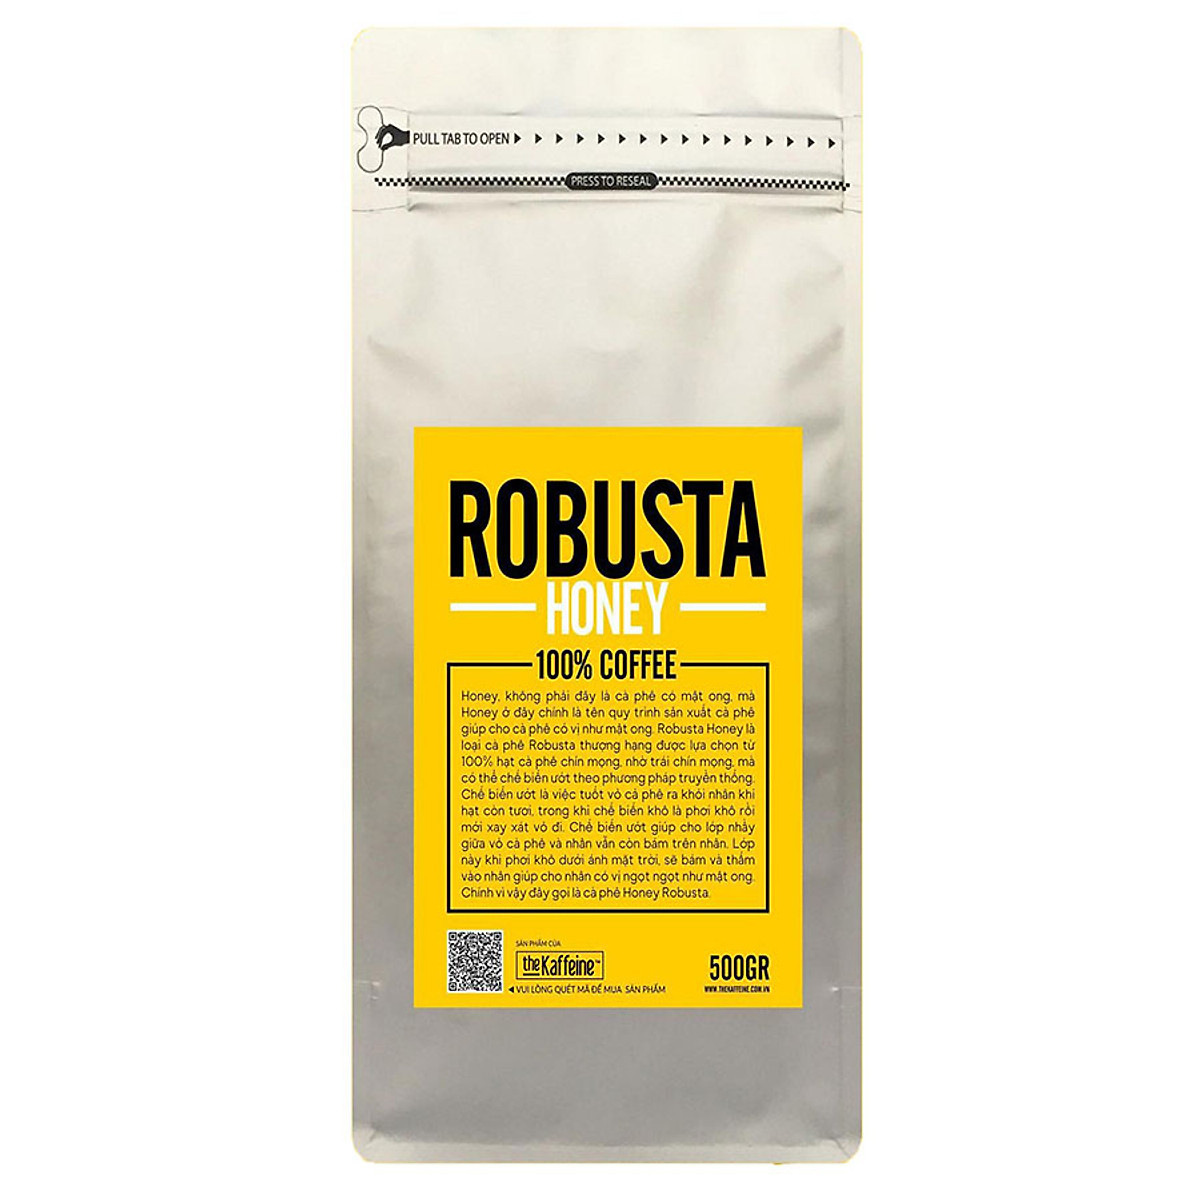 Cà phê Robusta Honey NGUYÊN HẠT 500g - The Kaffeine